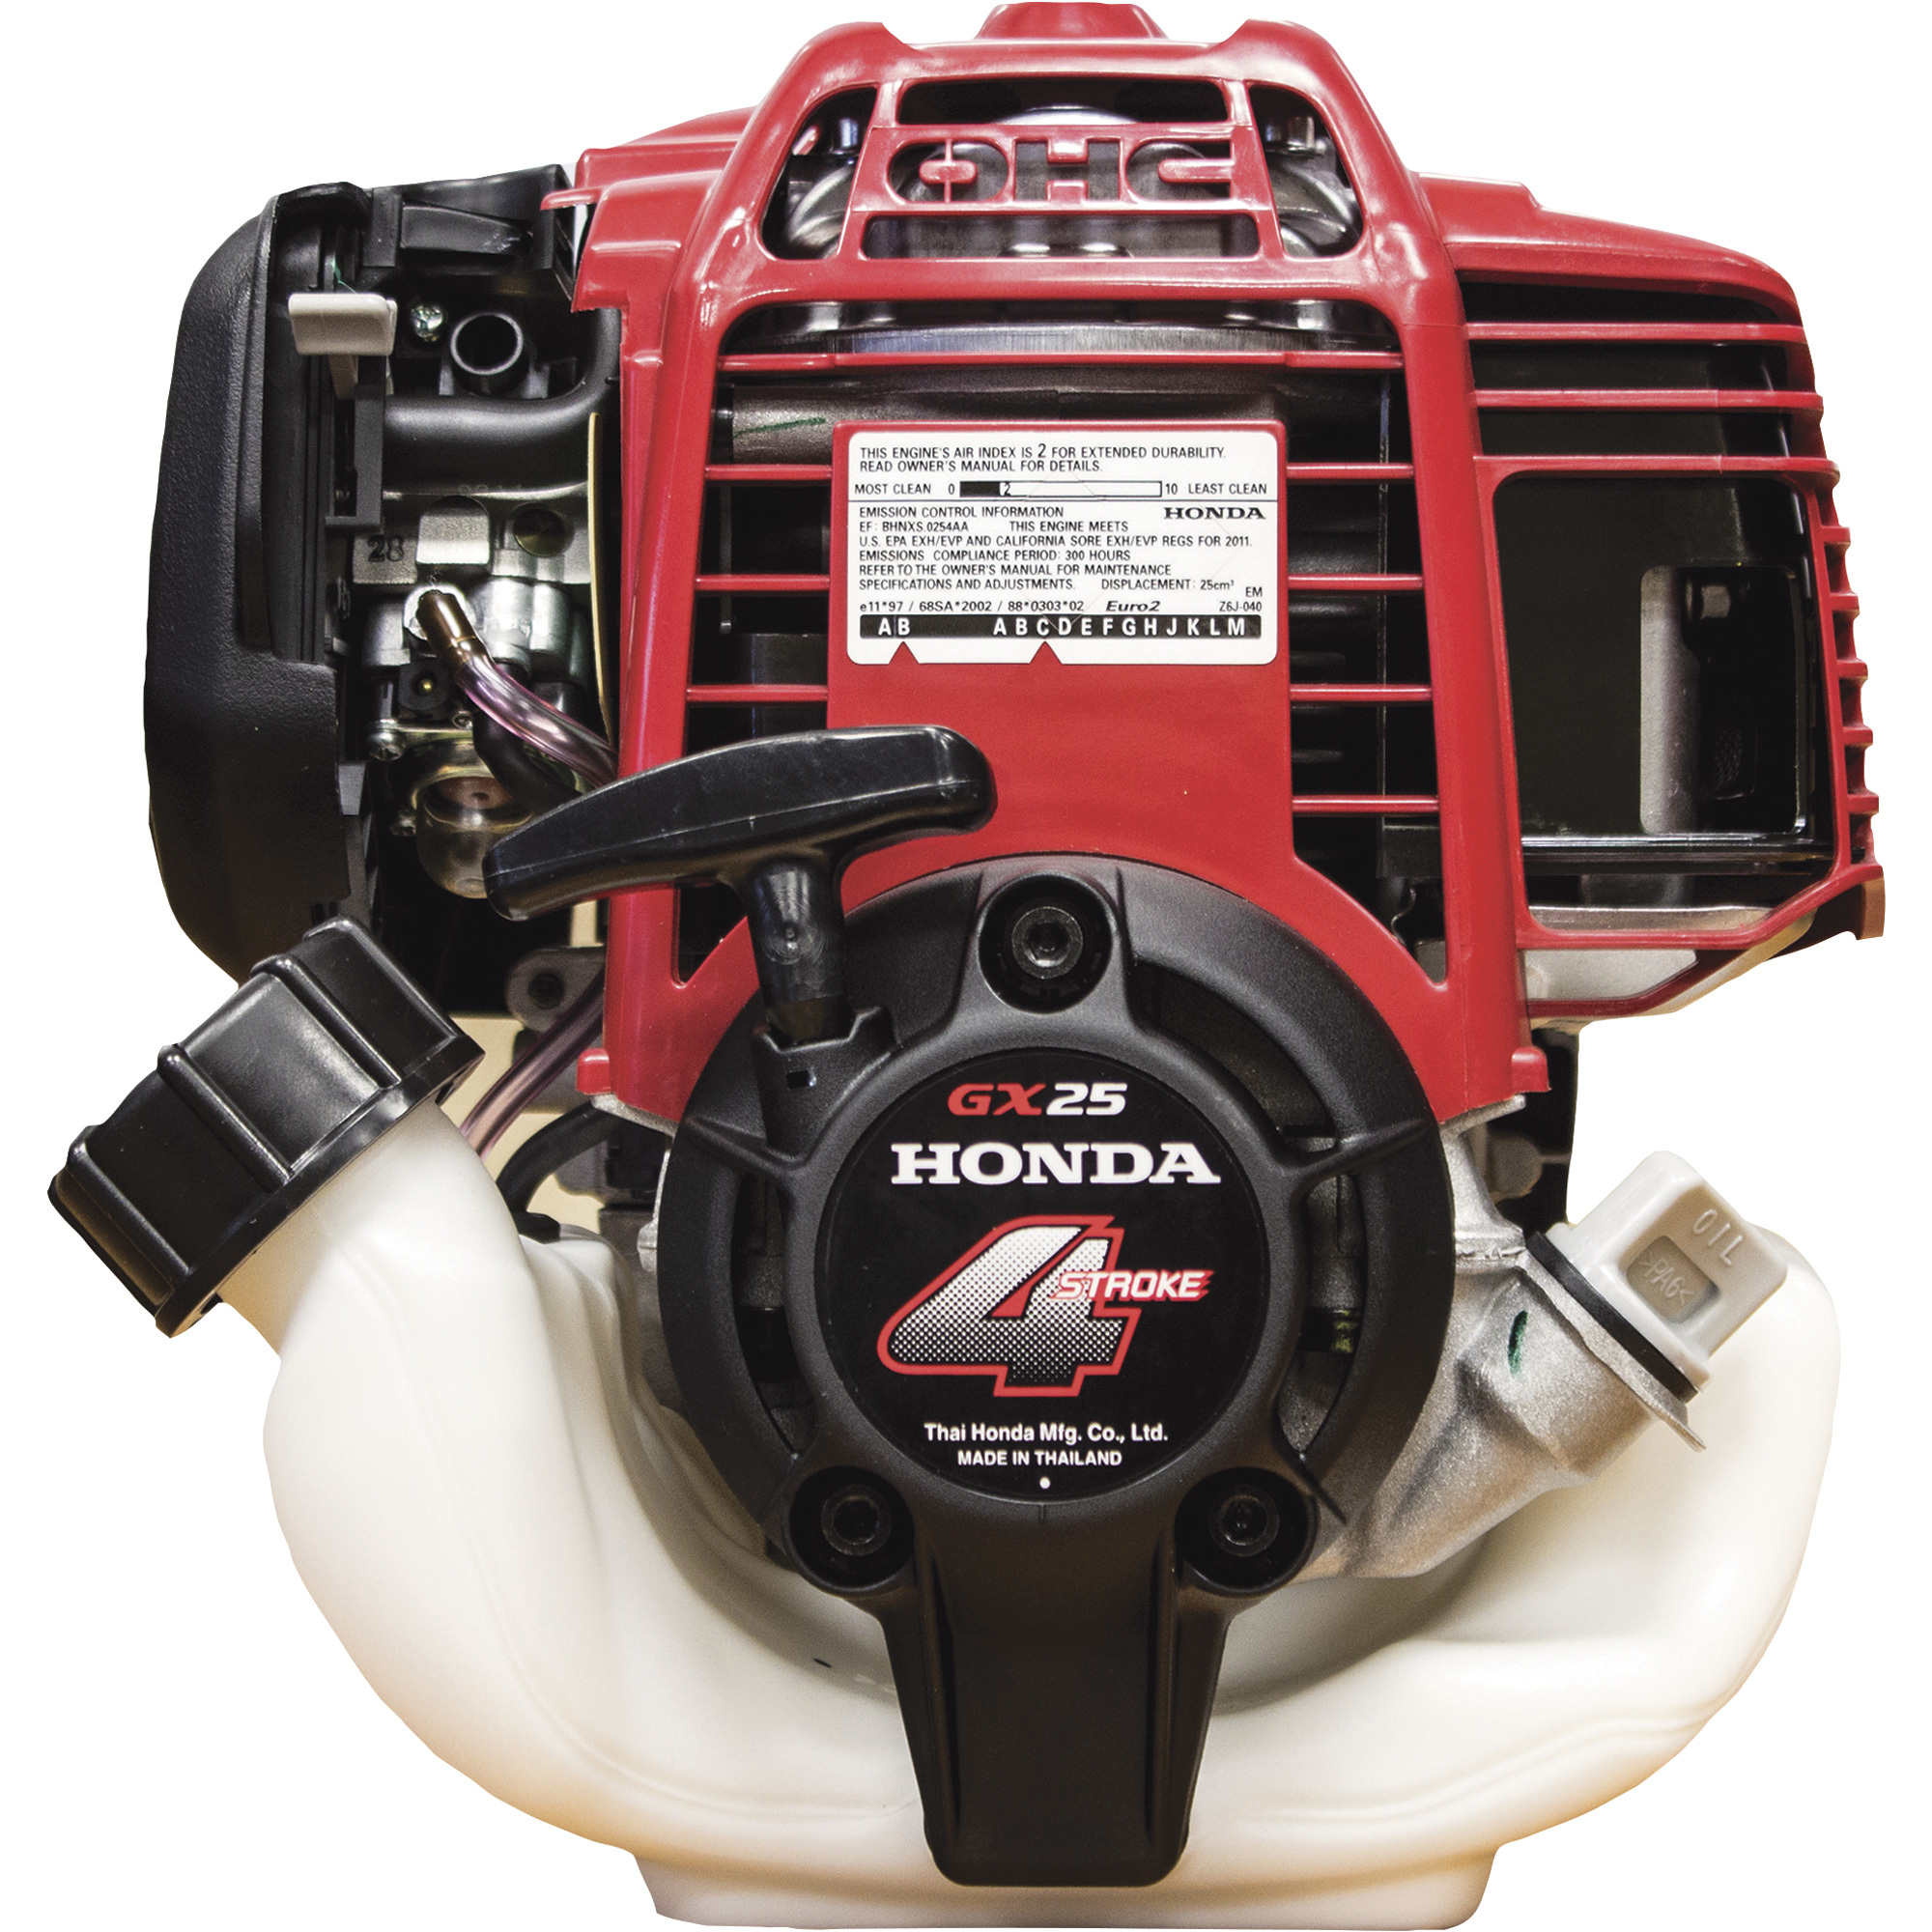 Honda Horizontal OHC Engine â 25cc, GX Series, Clutch with Crank/Piston Assembly, Model GX25NTS3